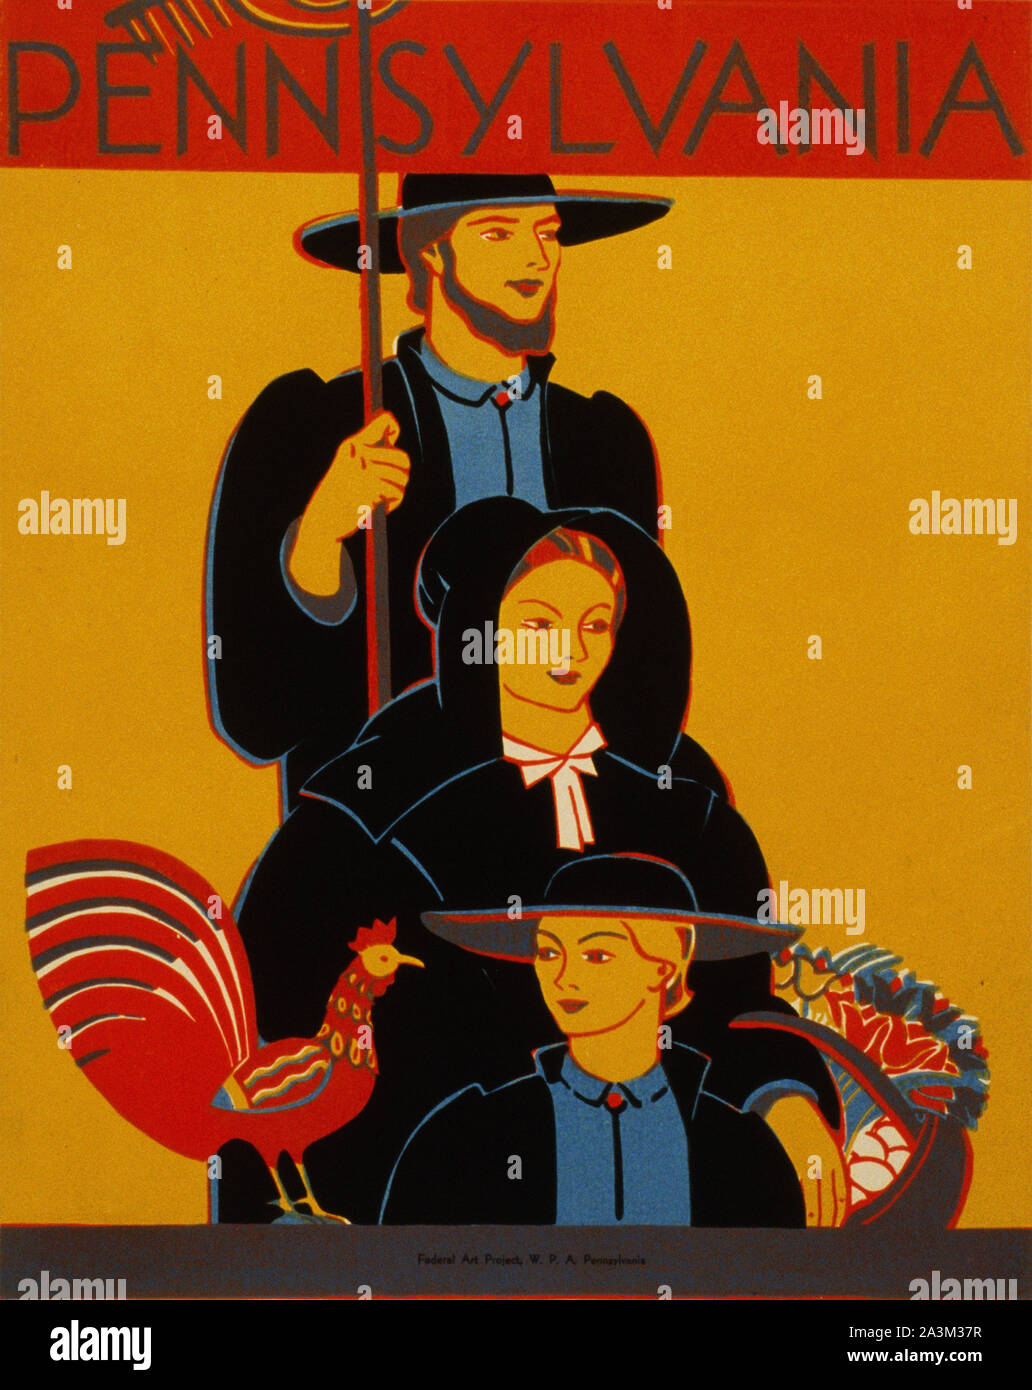 New York - l'avancement des travaux de l'administration fédérale - Projet d'Art - affiche ancienne Vintage poster - 1938 Banque D'Images